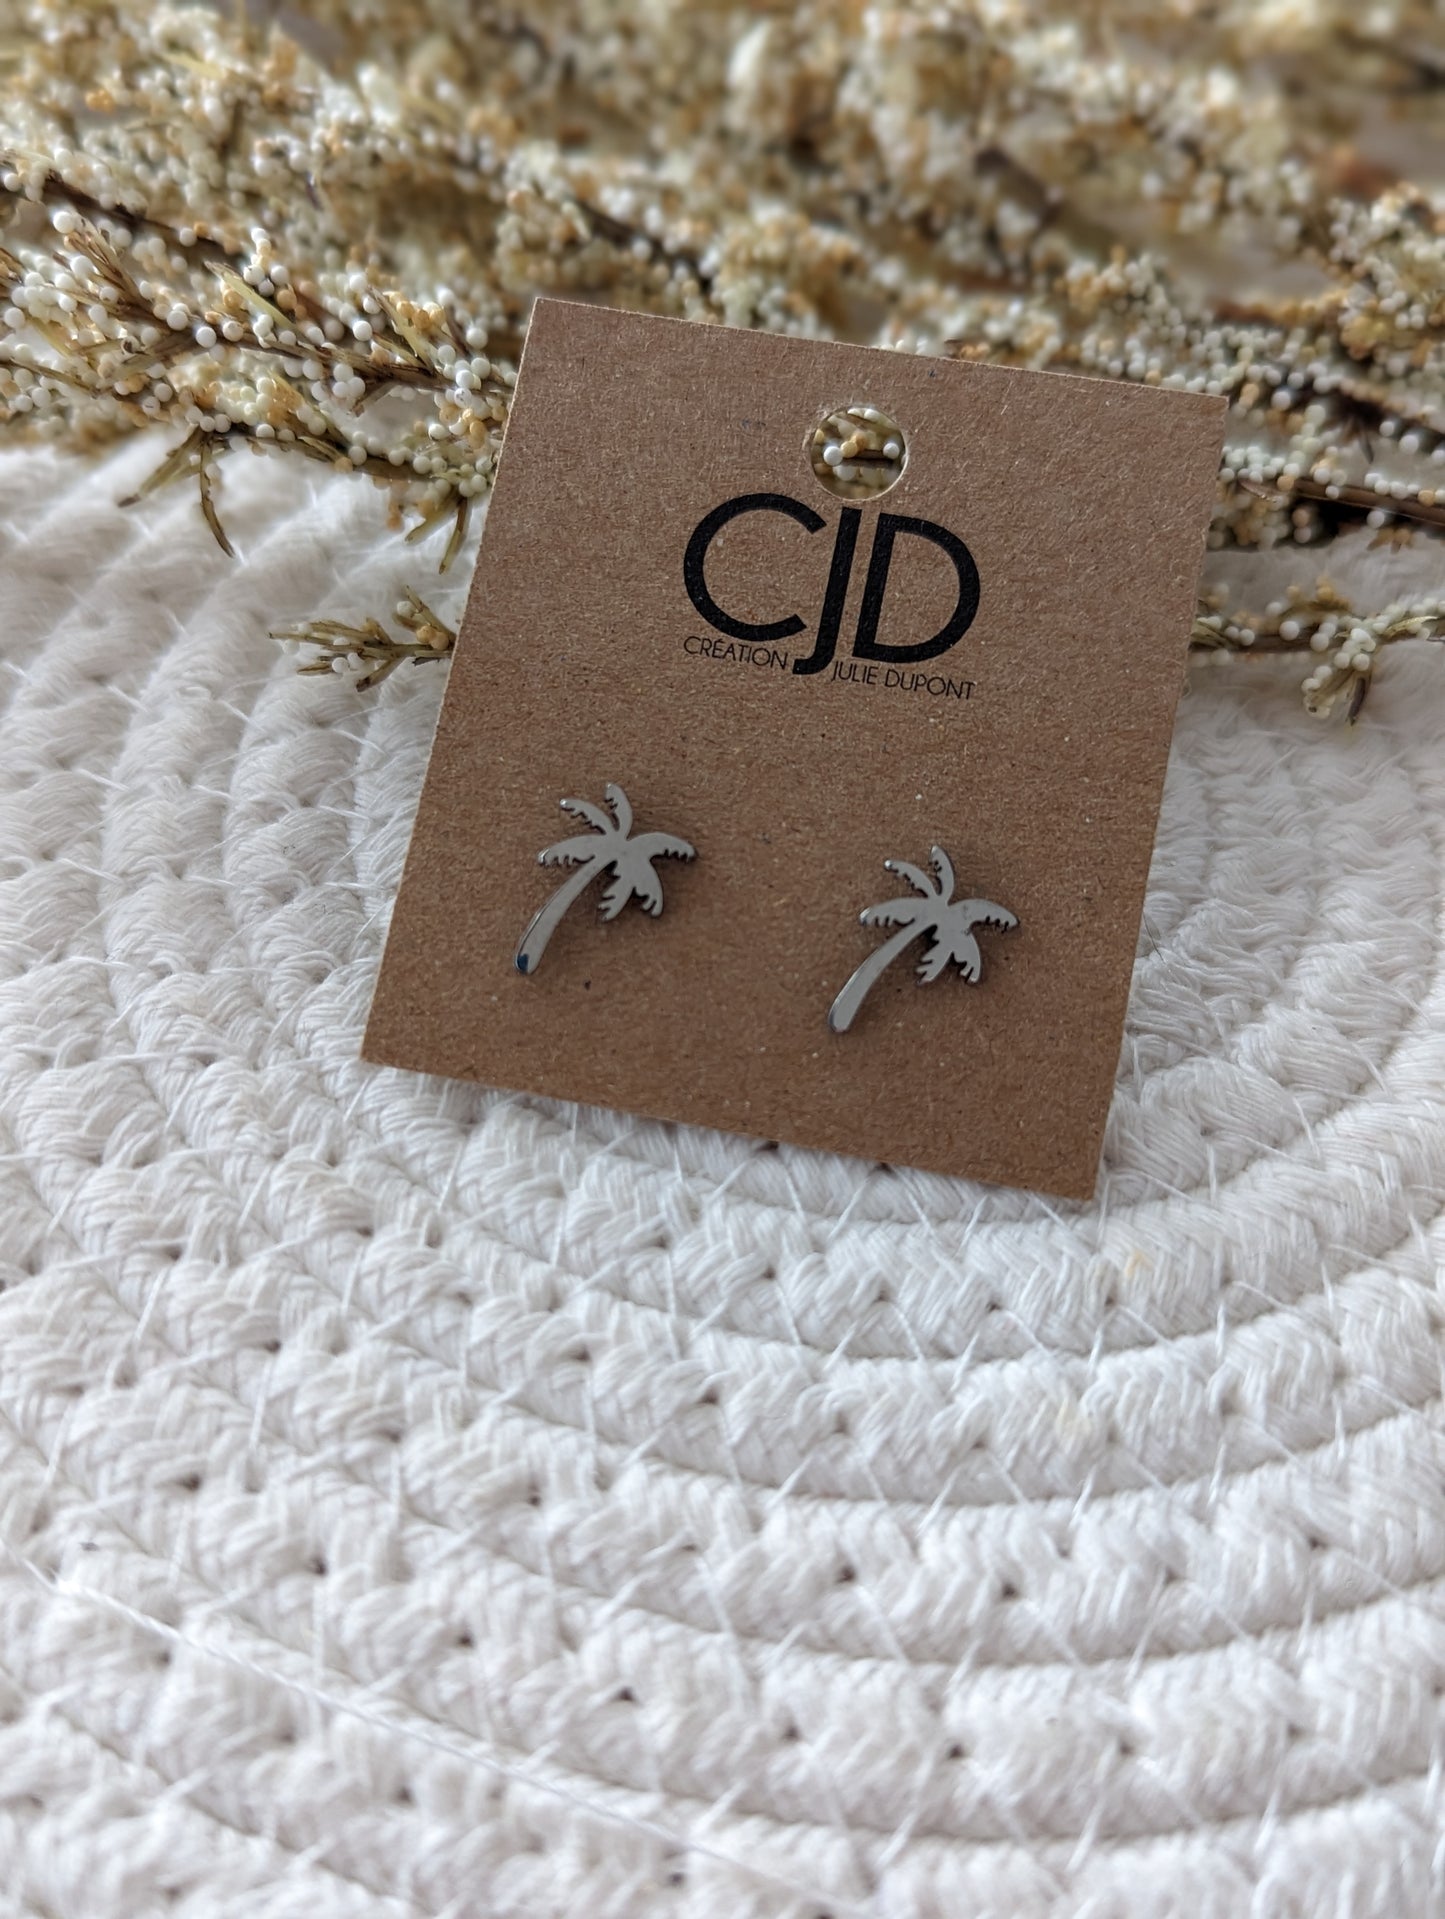 Boucles d'oreilles palmier // palm tree stud earrings // stainless steel earrings // minimalist jewelry // (bo-1647)